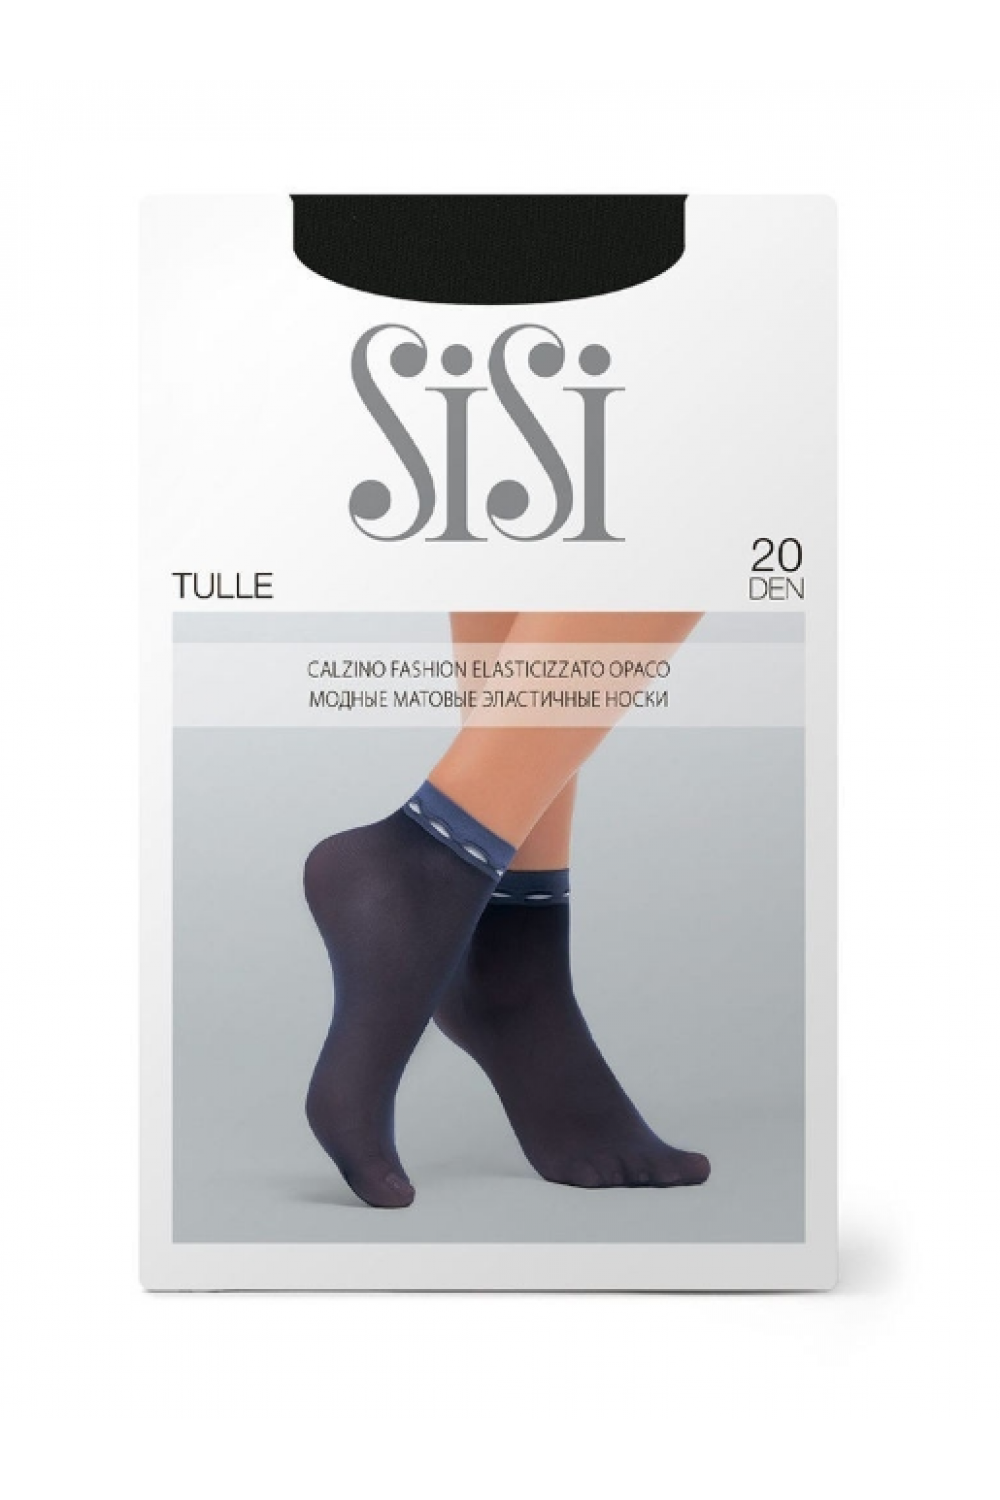 Элегантные тонкие носки тм SiSi TULLE с эффектом тюля. С имитацией декоративной ленты на резинке